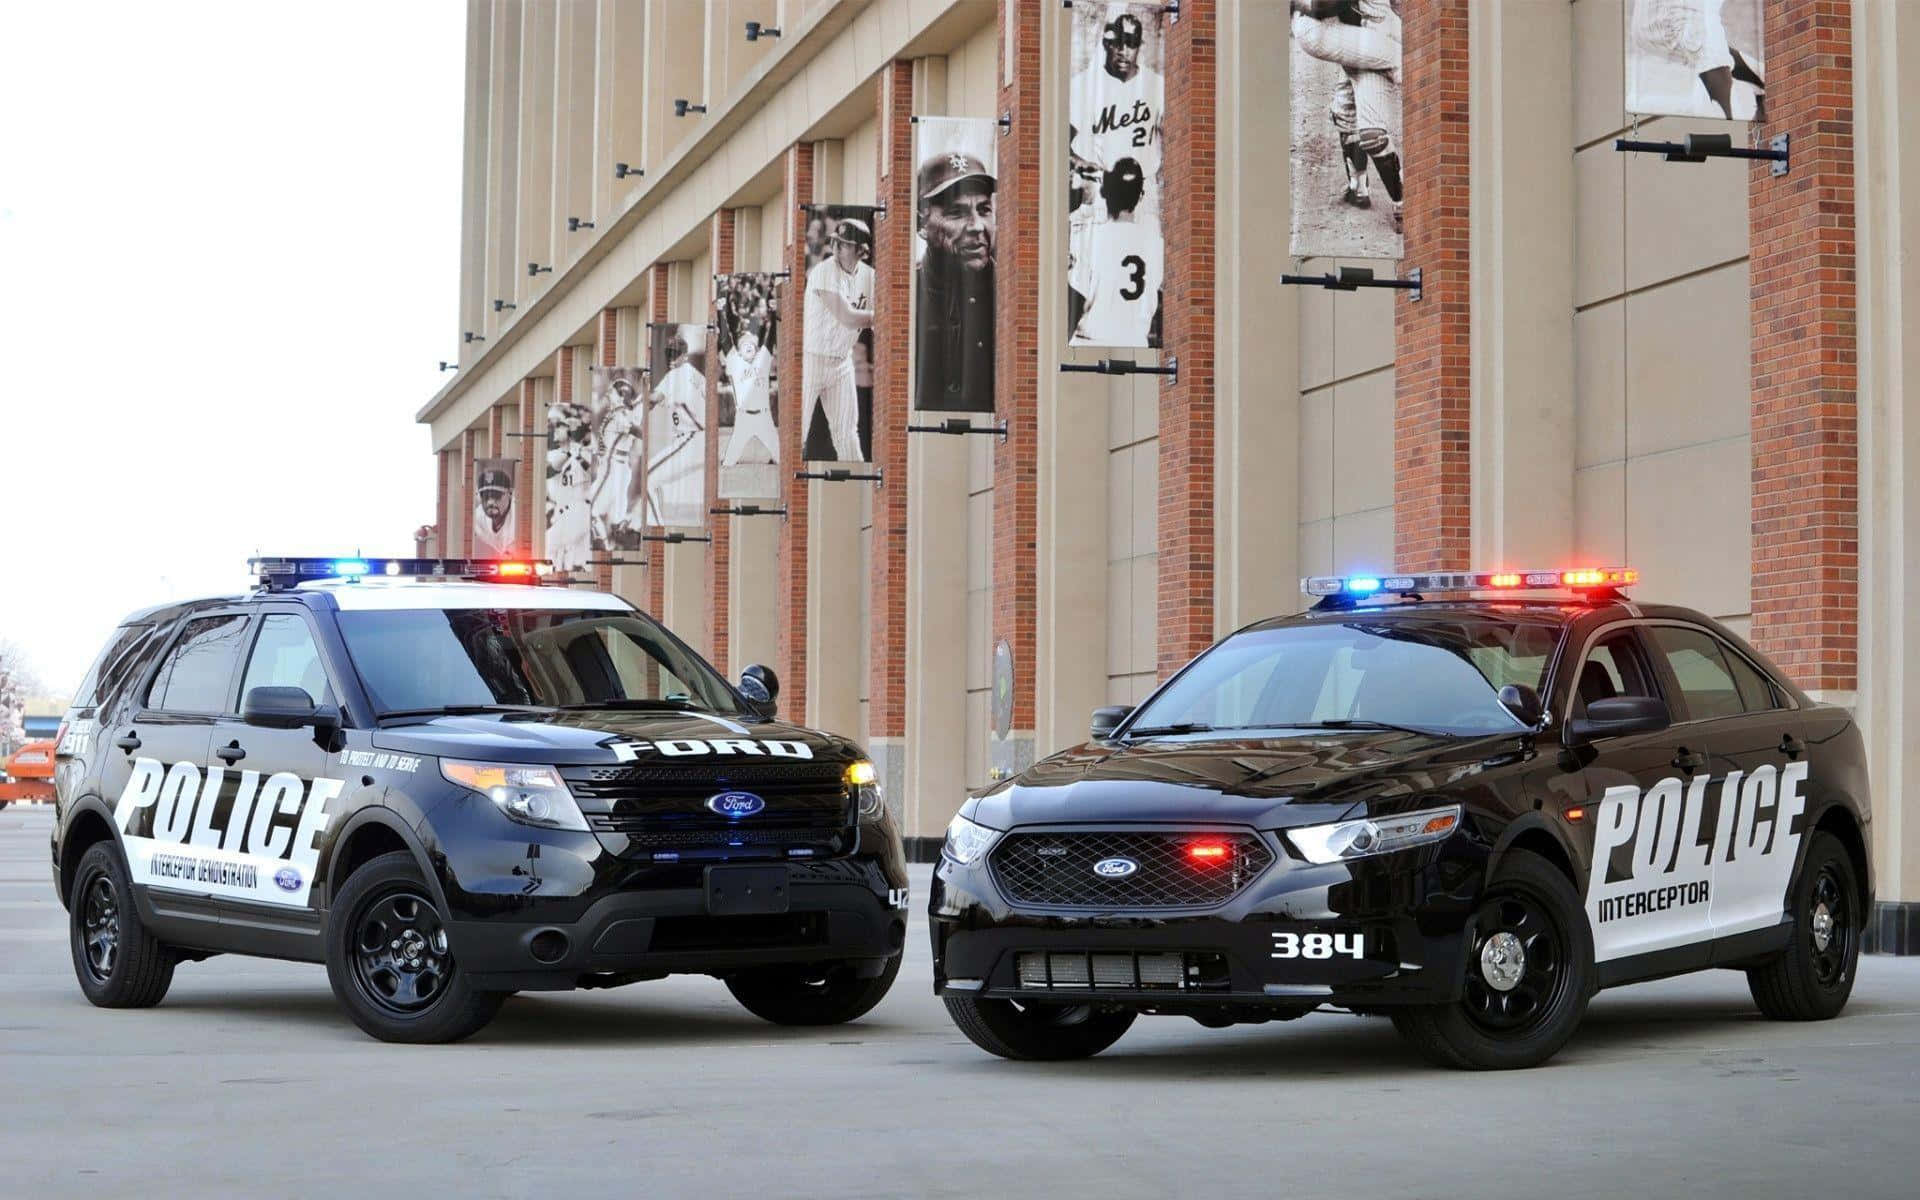 Dueveicoli Della Polizia Parcheggiati Di Fronte A Un Edificio